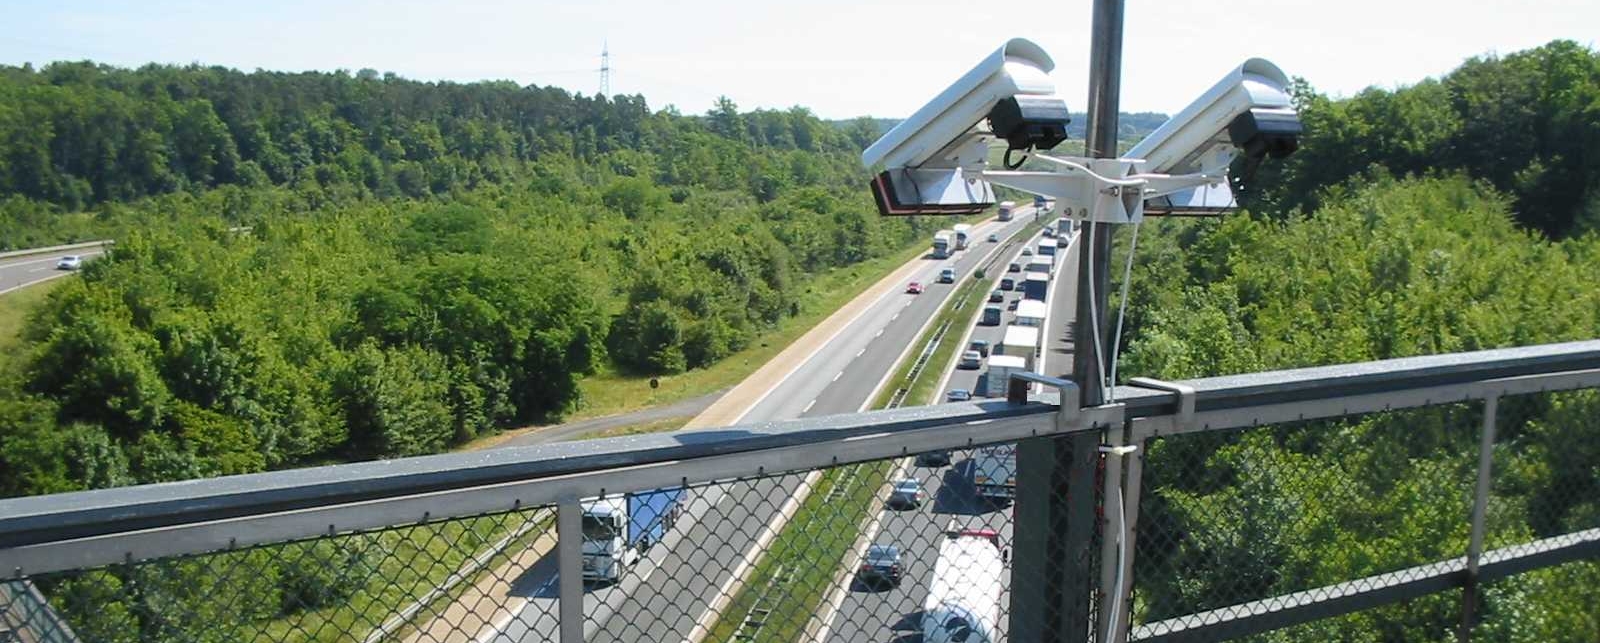 Traffic camera pointed at motorway